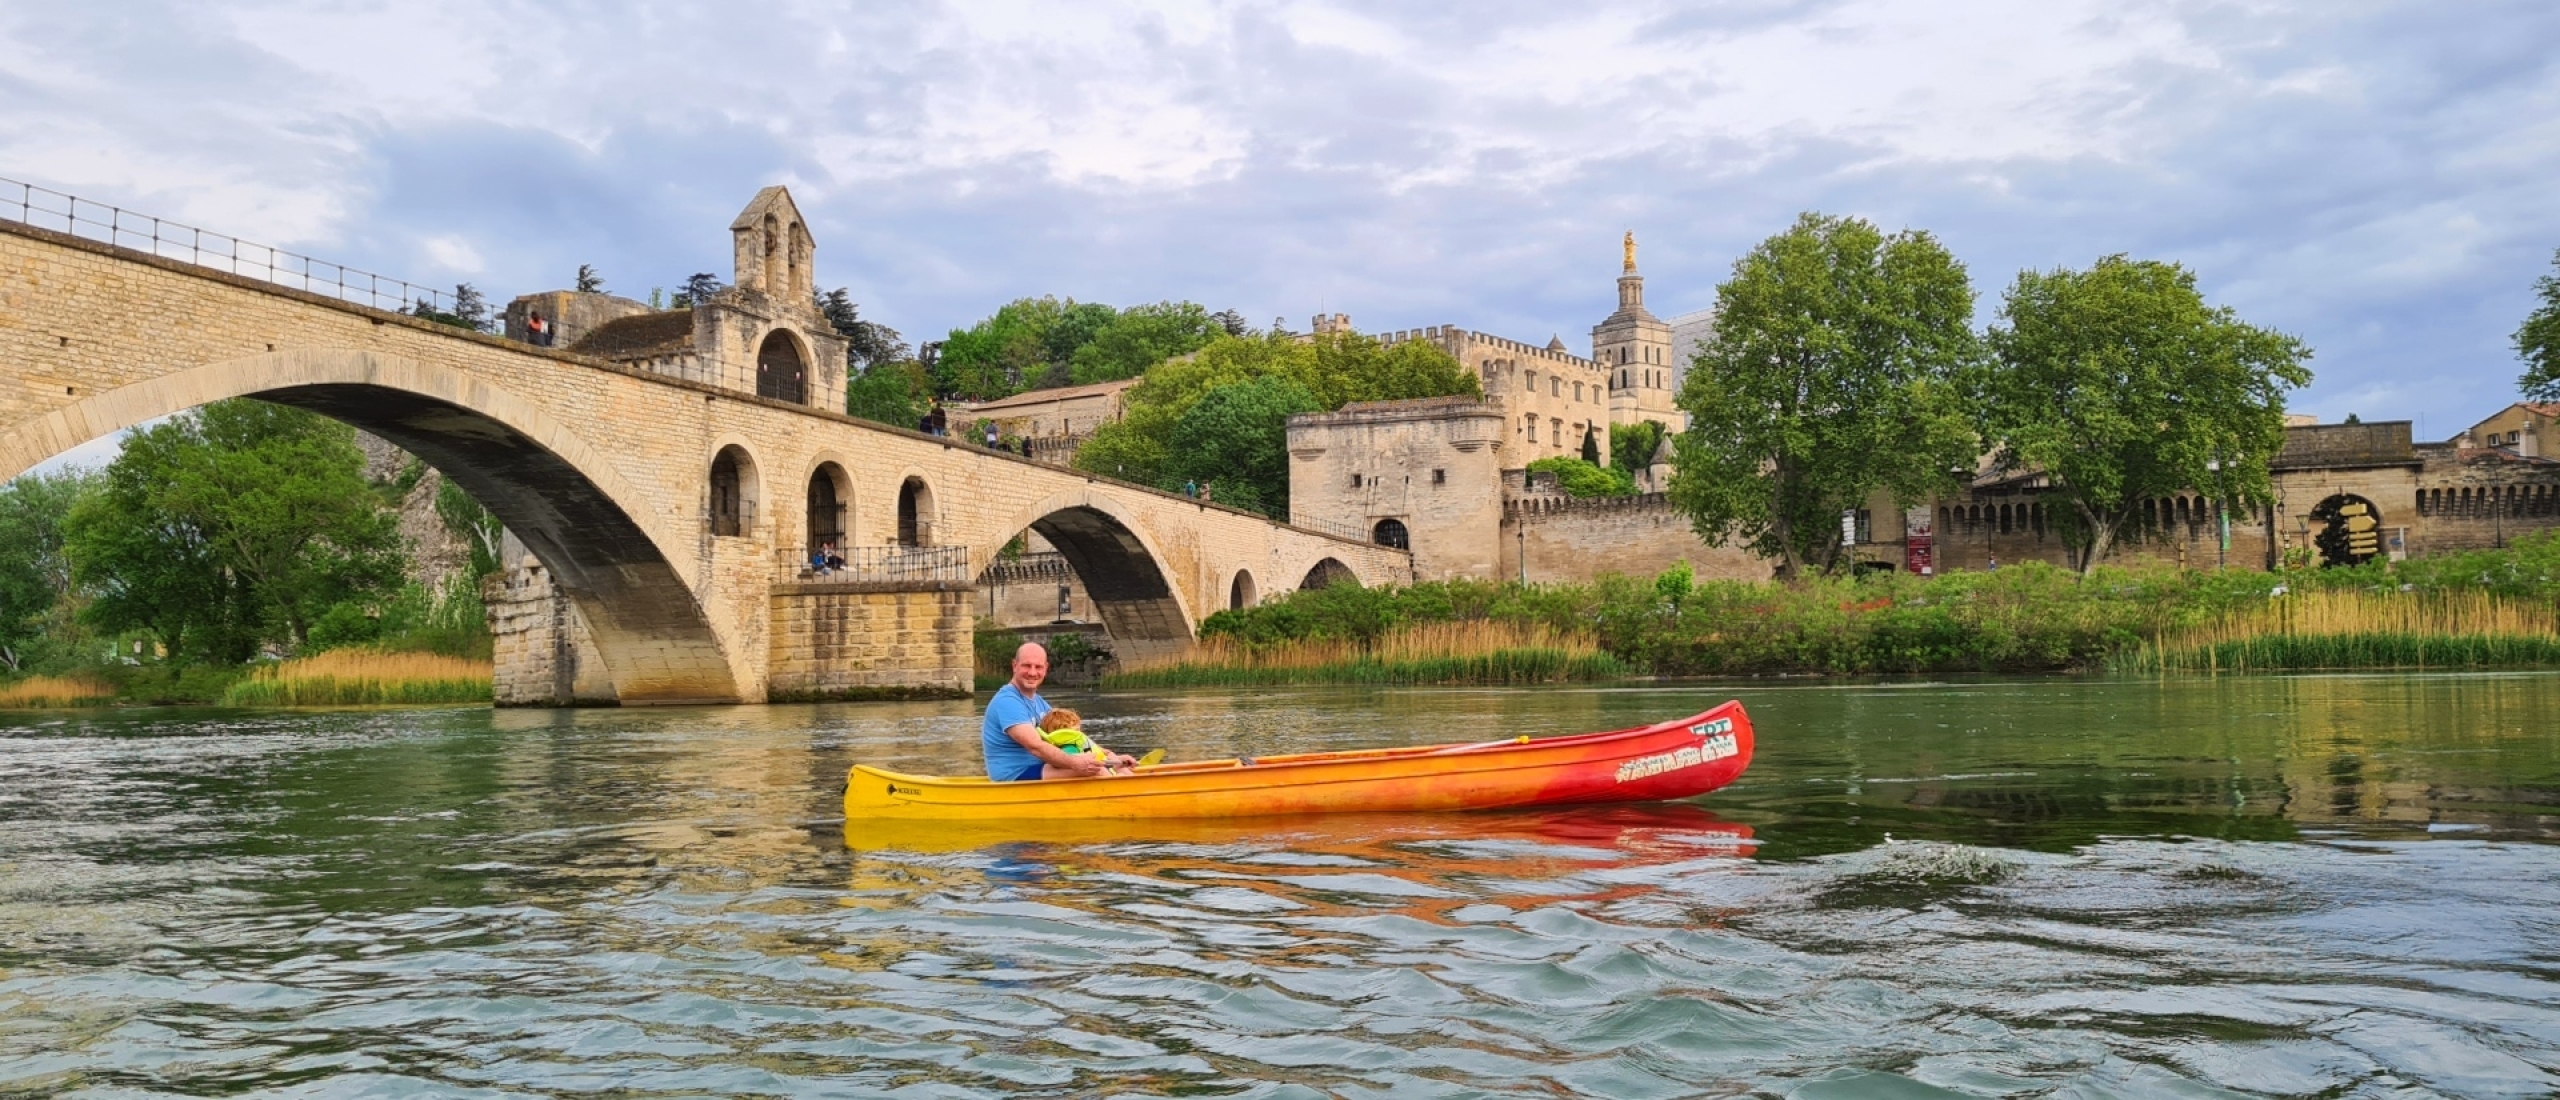 Avignon, heeft veel meer dan alleen de beroemde Pont d'Avignon